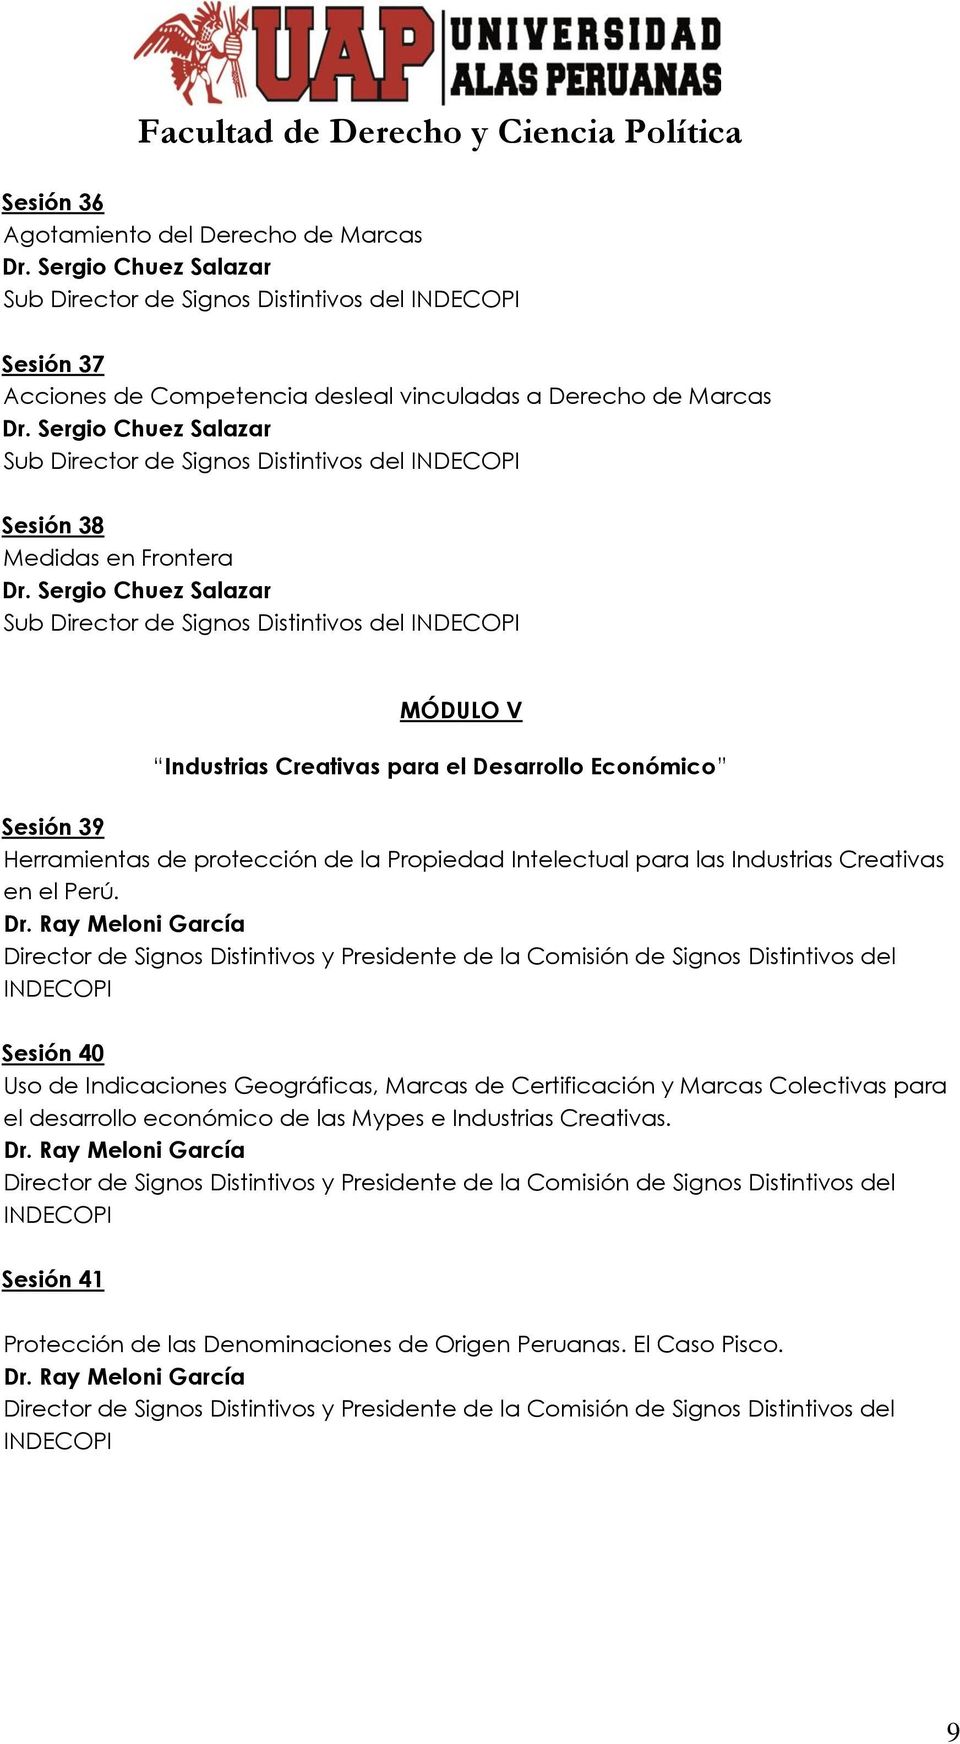 Sesión 39 Herramientas de protección de la Propiedad Intelectual para las Industrias Creativas en el Perú.